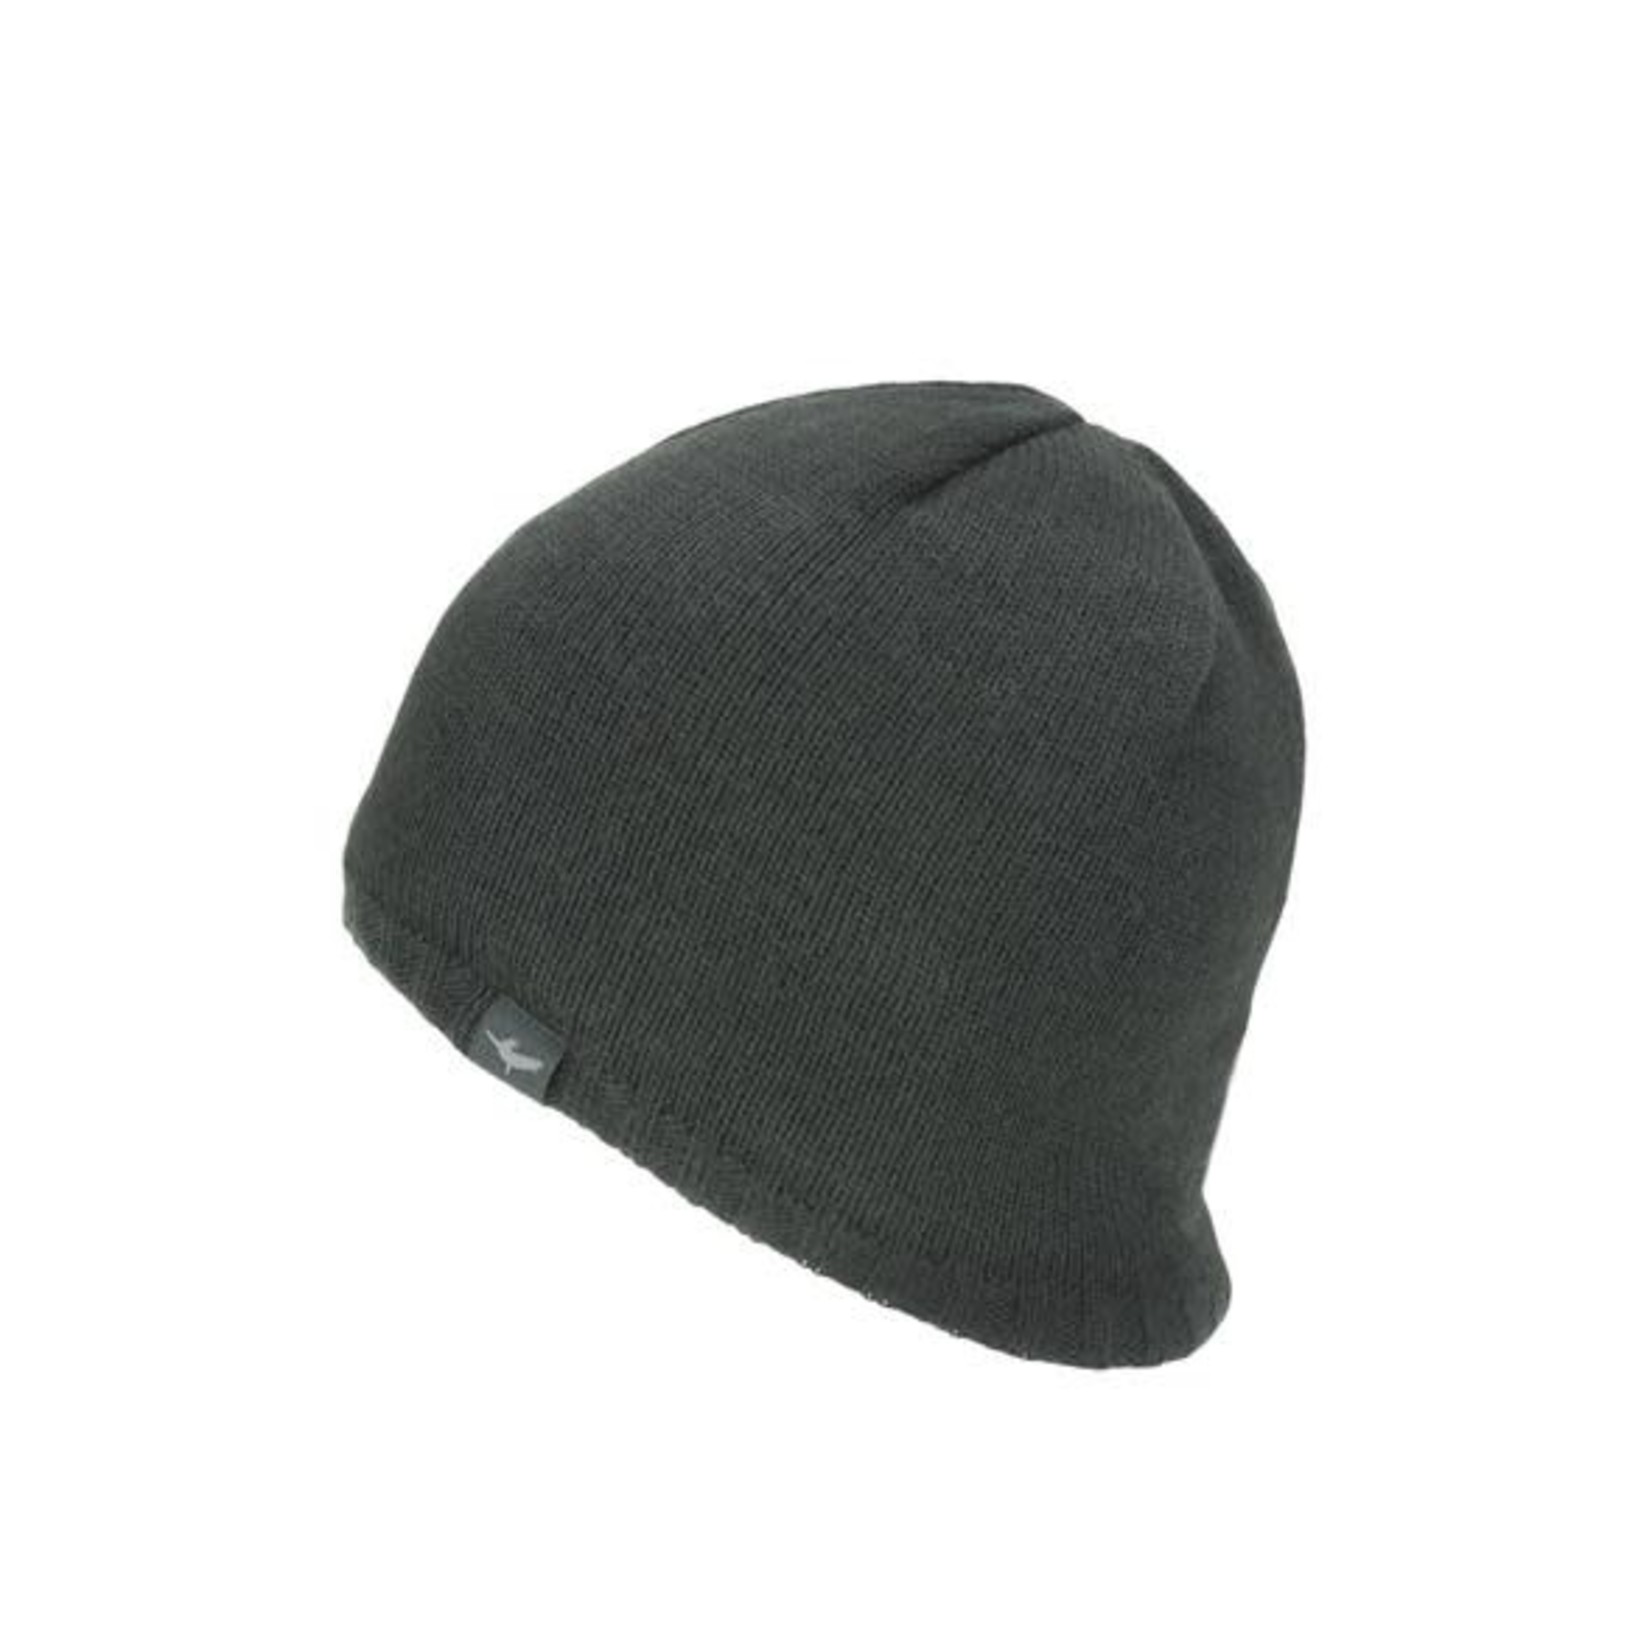 SealSkinz 100% WATERPROOF Bobble hat ideal for walk... Windproof Breathable 